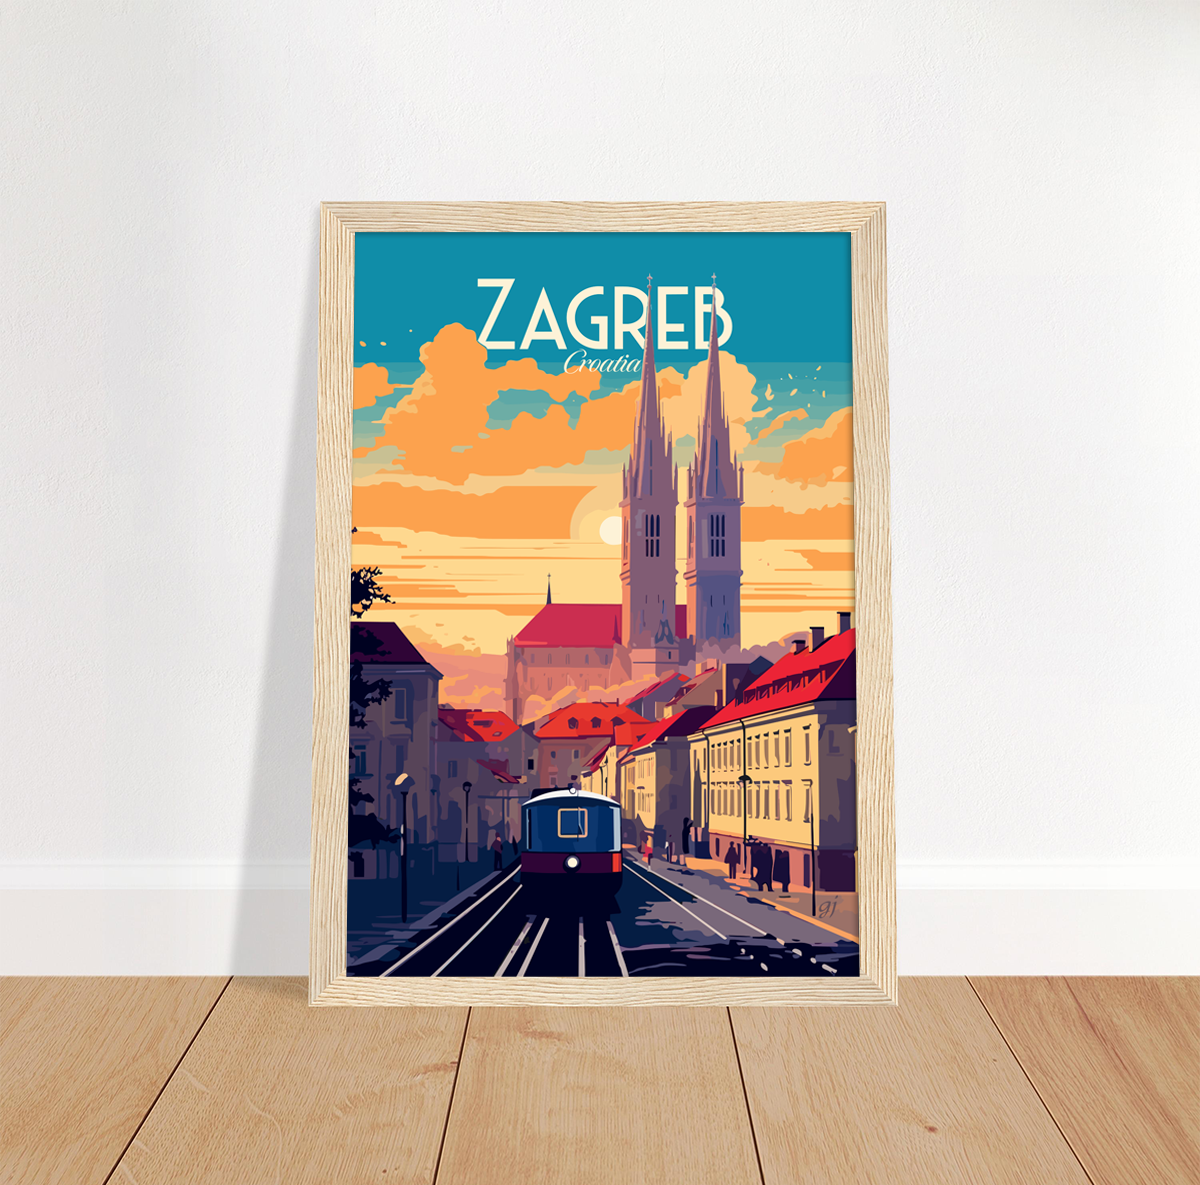 Zagreb poster by bon voyage design